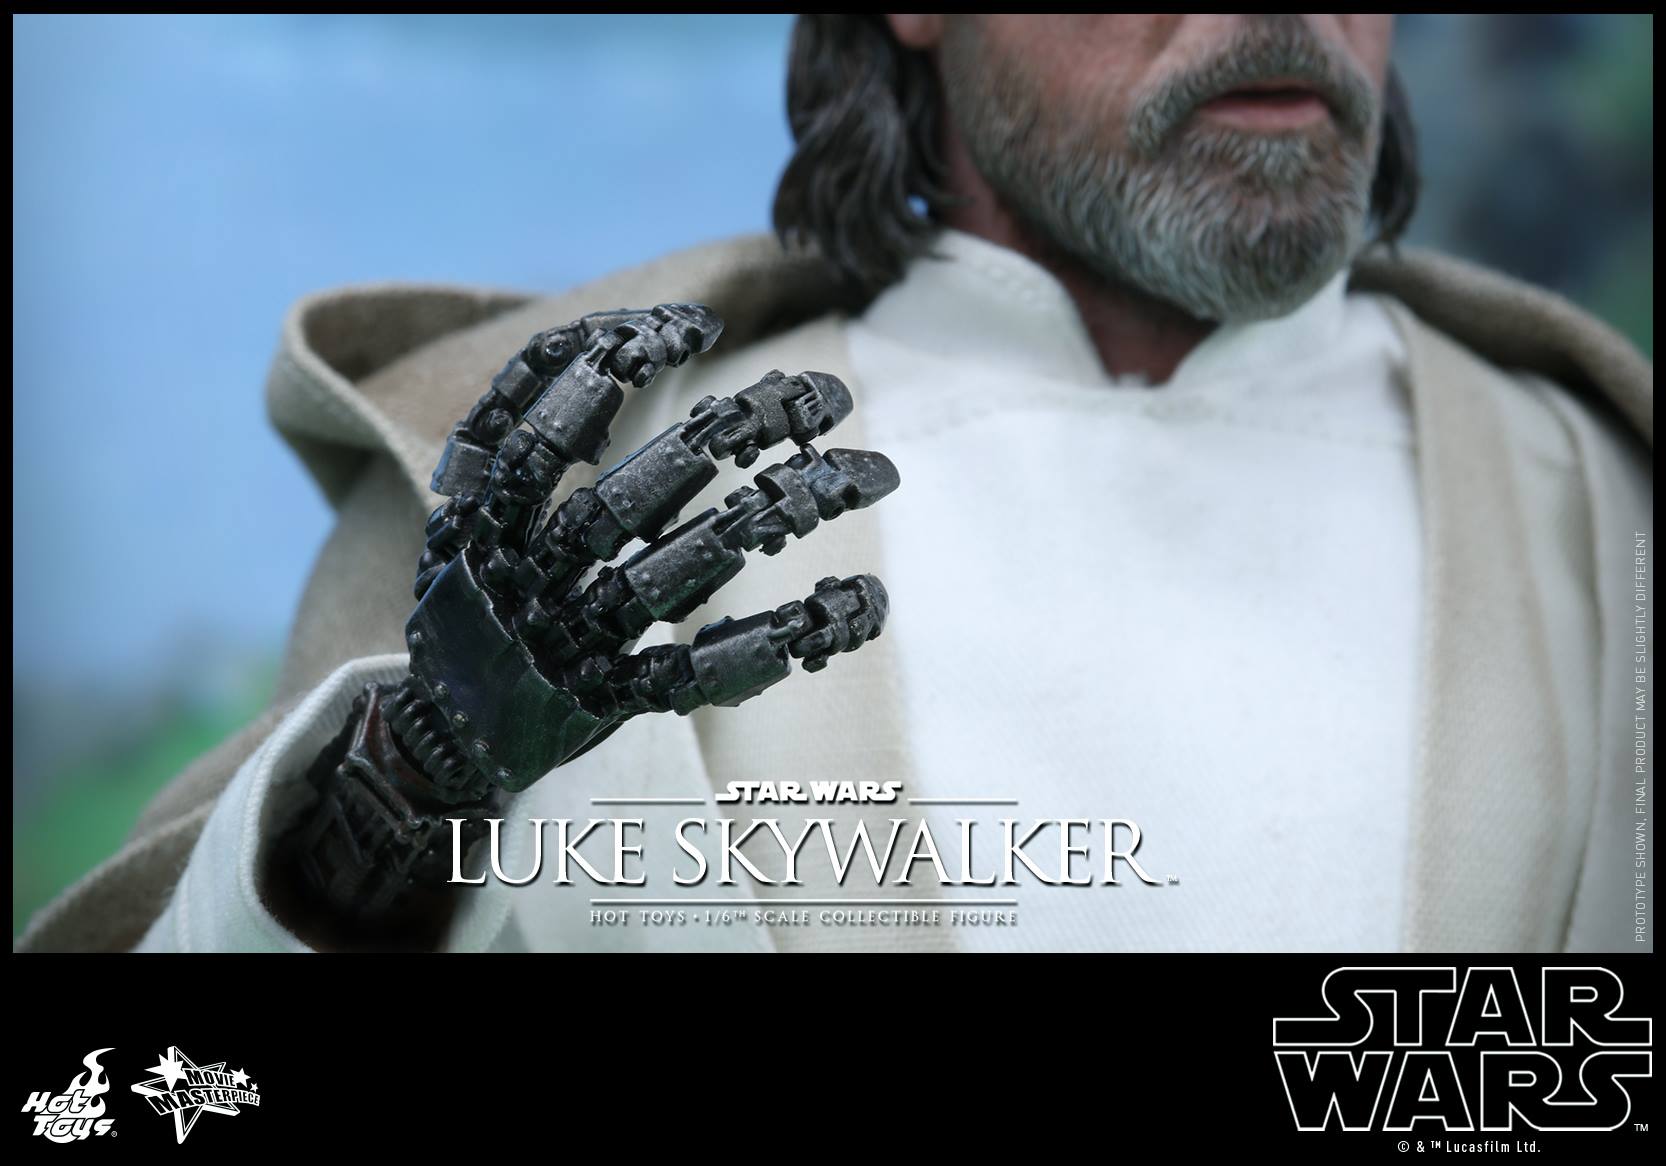 swfahtluke4 Luke Skywalker Star Wars: The Force Awakens Hot Toys Action Figure Revealed